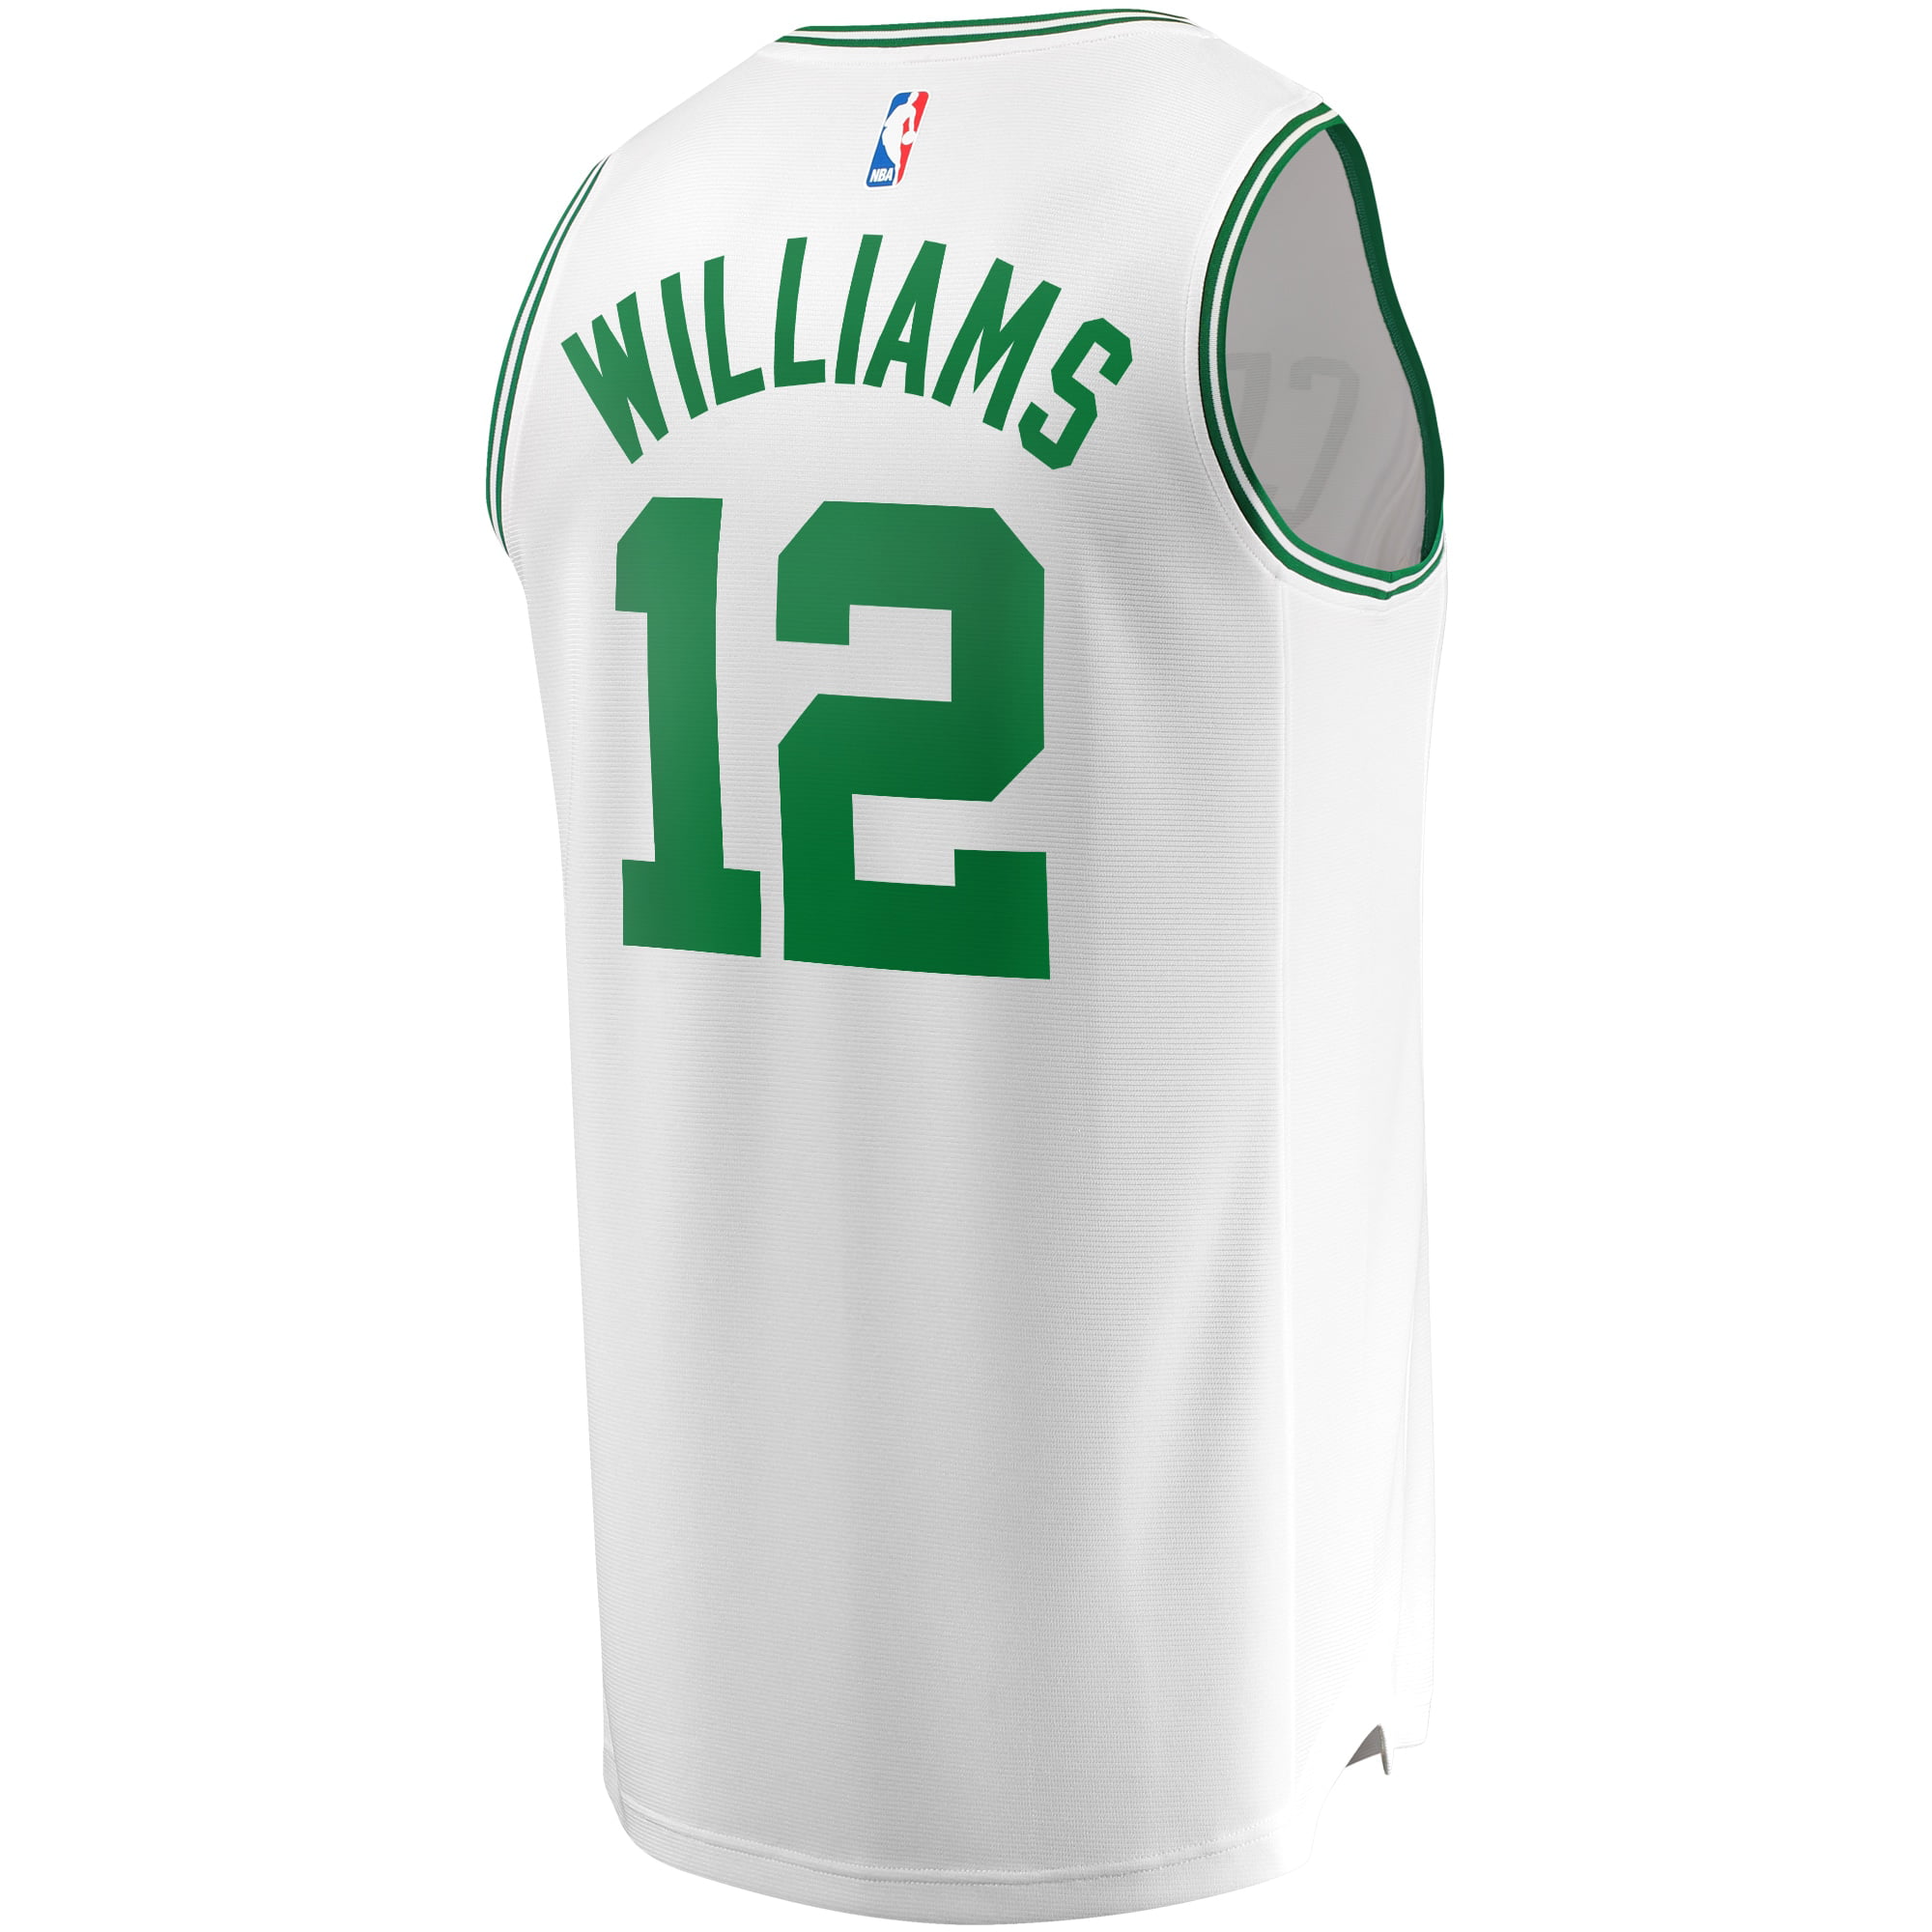 grant williams boston celtics jersey